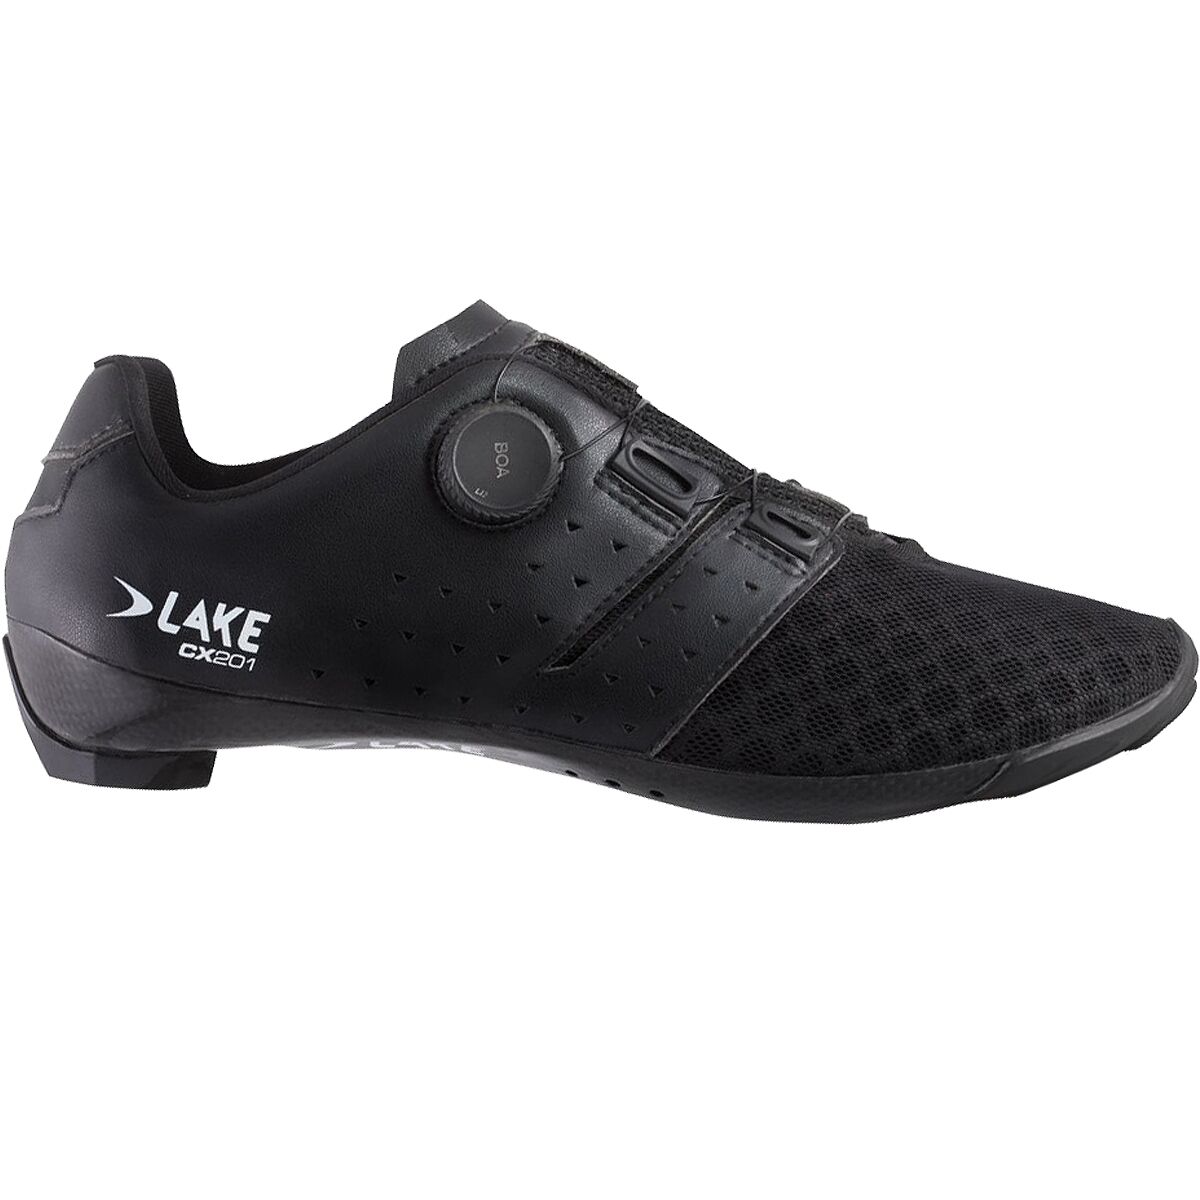 Lake CX201 Cycling Shoe - Men's Black/Black, 48.0